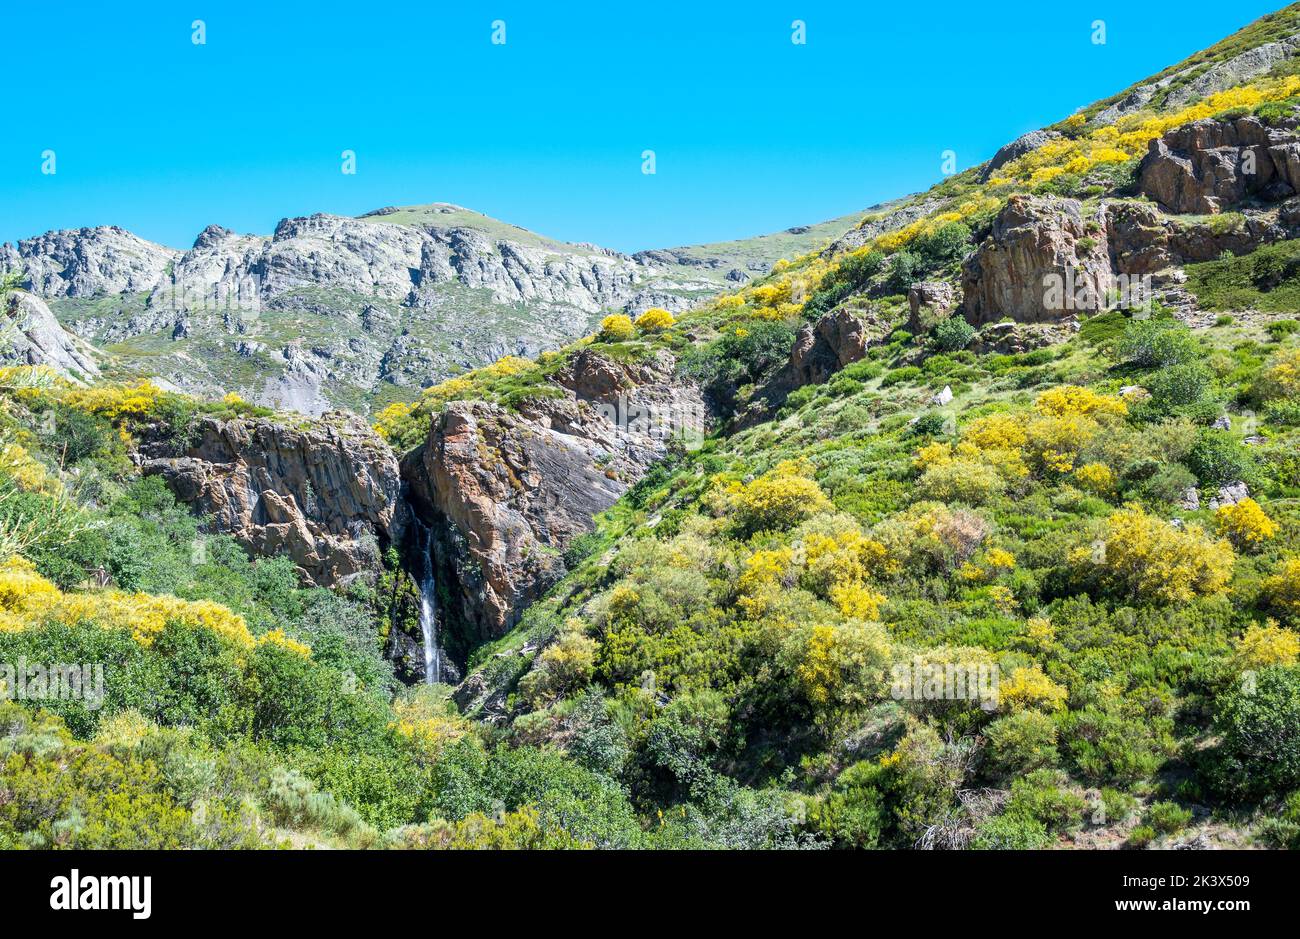 La catarata de Mazobre en pleno parque natural de la montaÃ±a Palentina durante un dÃa de verano, EspaÃ±a Stock Photo